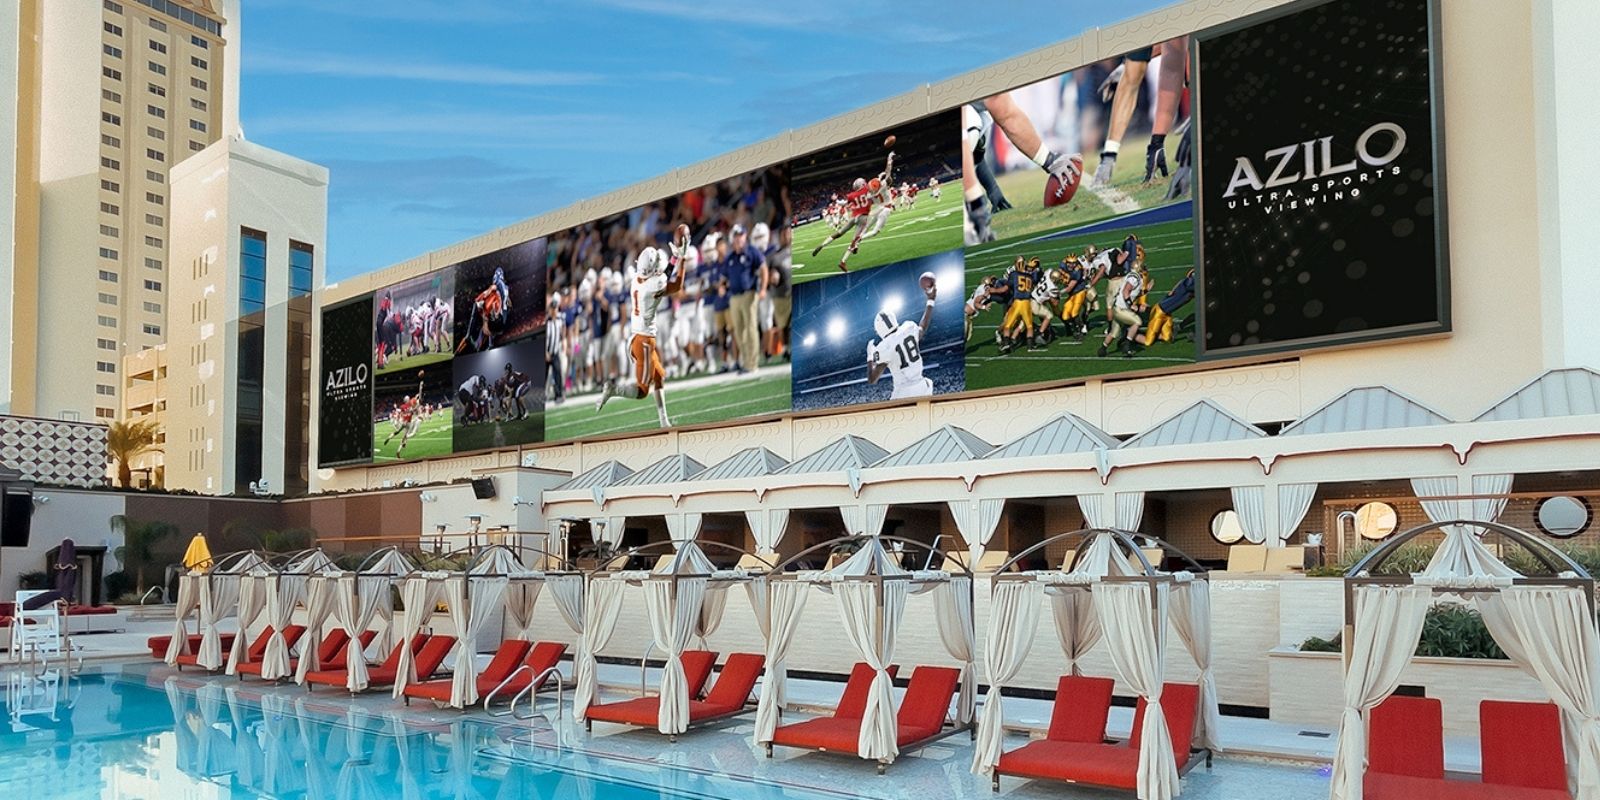 AZILO Ultra Pool - football on big screens over pool and cabanas